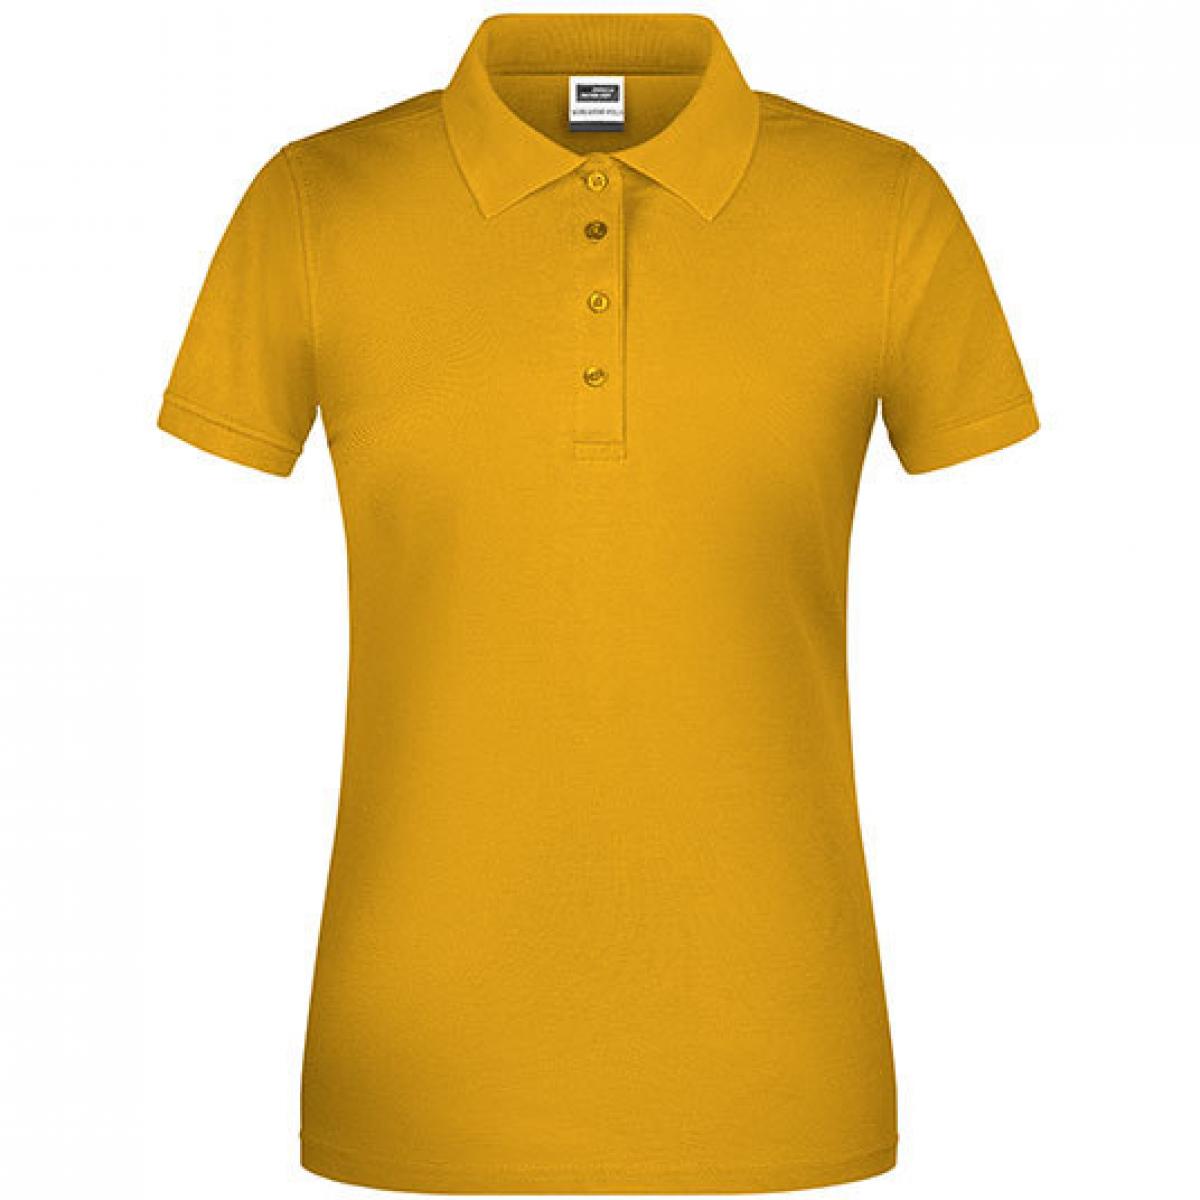 Hersteller: James+Nicholson Herstellernummer: JN873 Artikelbezeichnung: Damen Bio Workwear Polo, Waschbar bis 60 °C Farbe: Gold Yellow